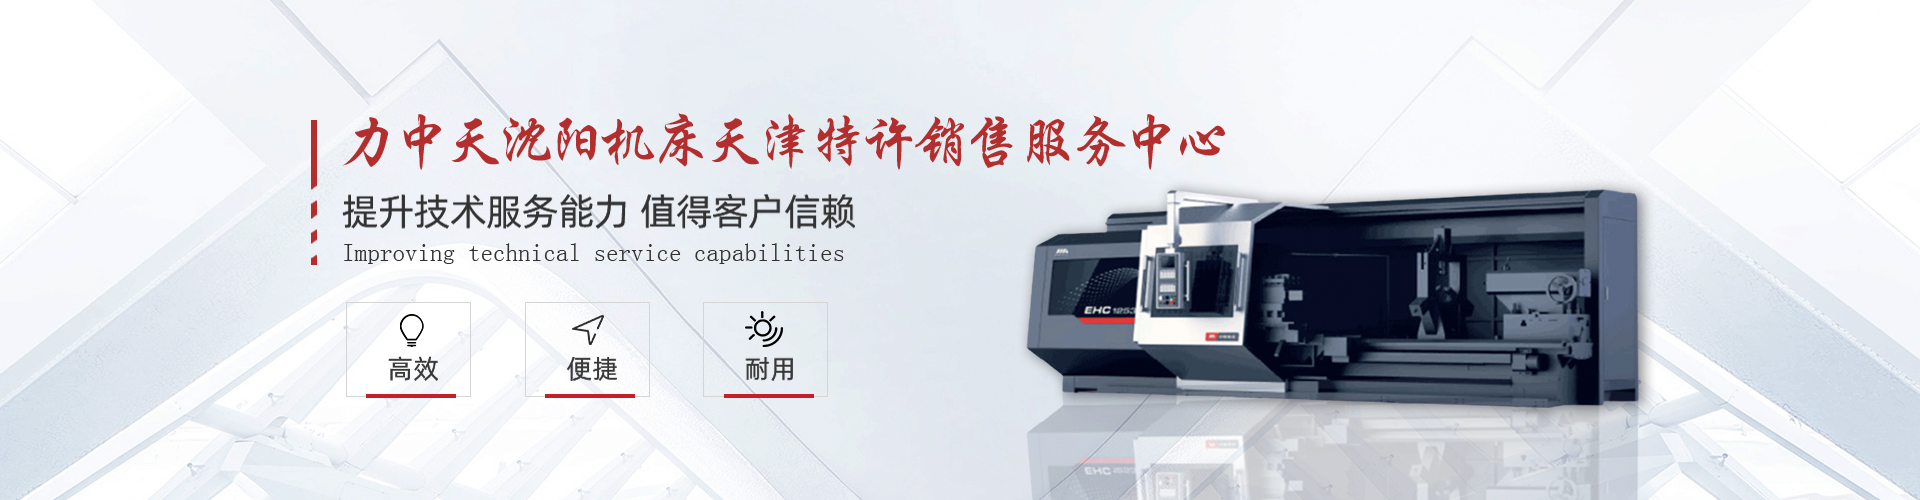 易倍·(中国)体育官方网站-EMC SPORTS_产品4121